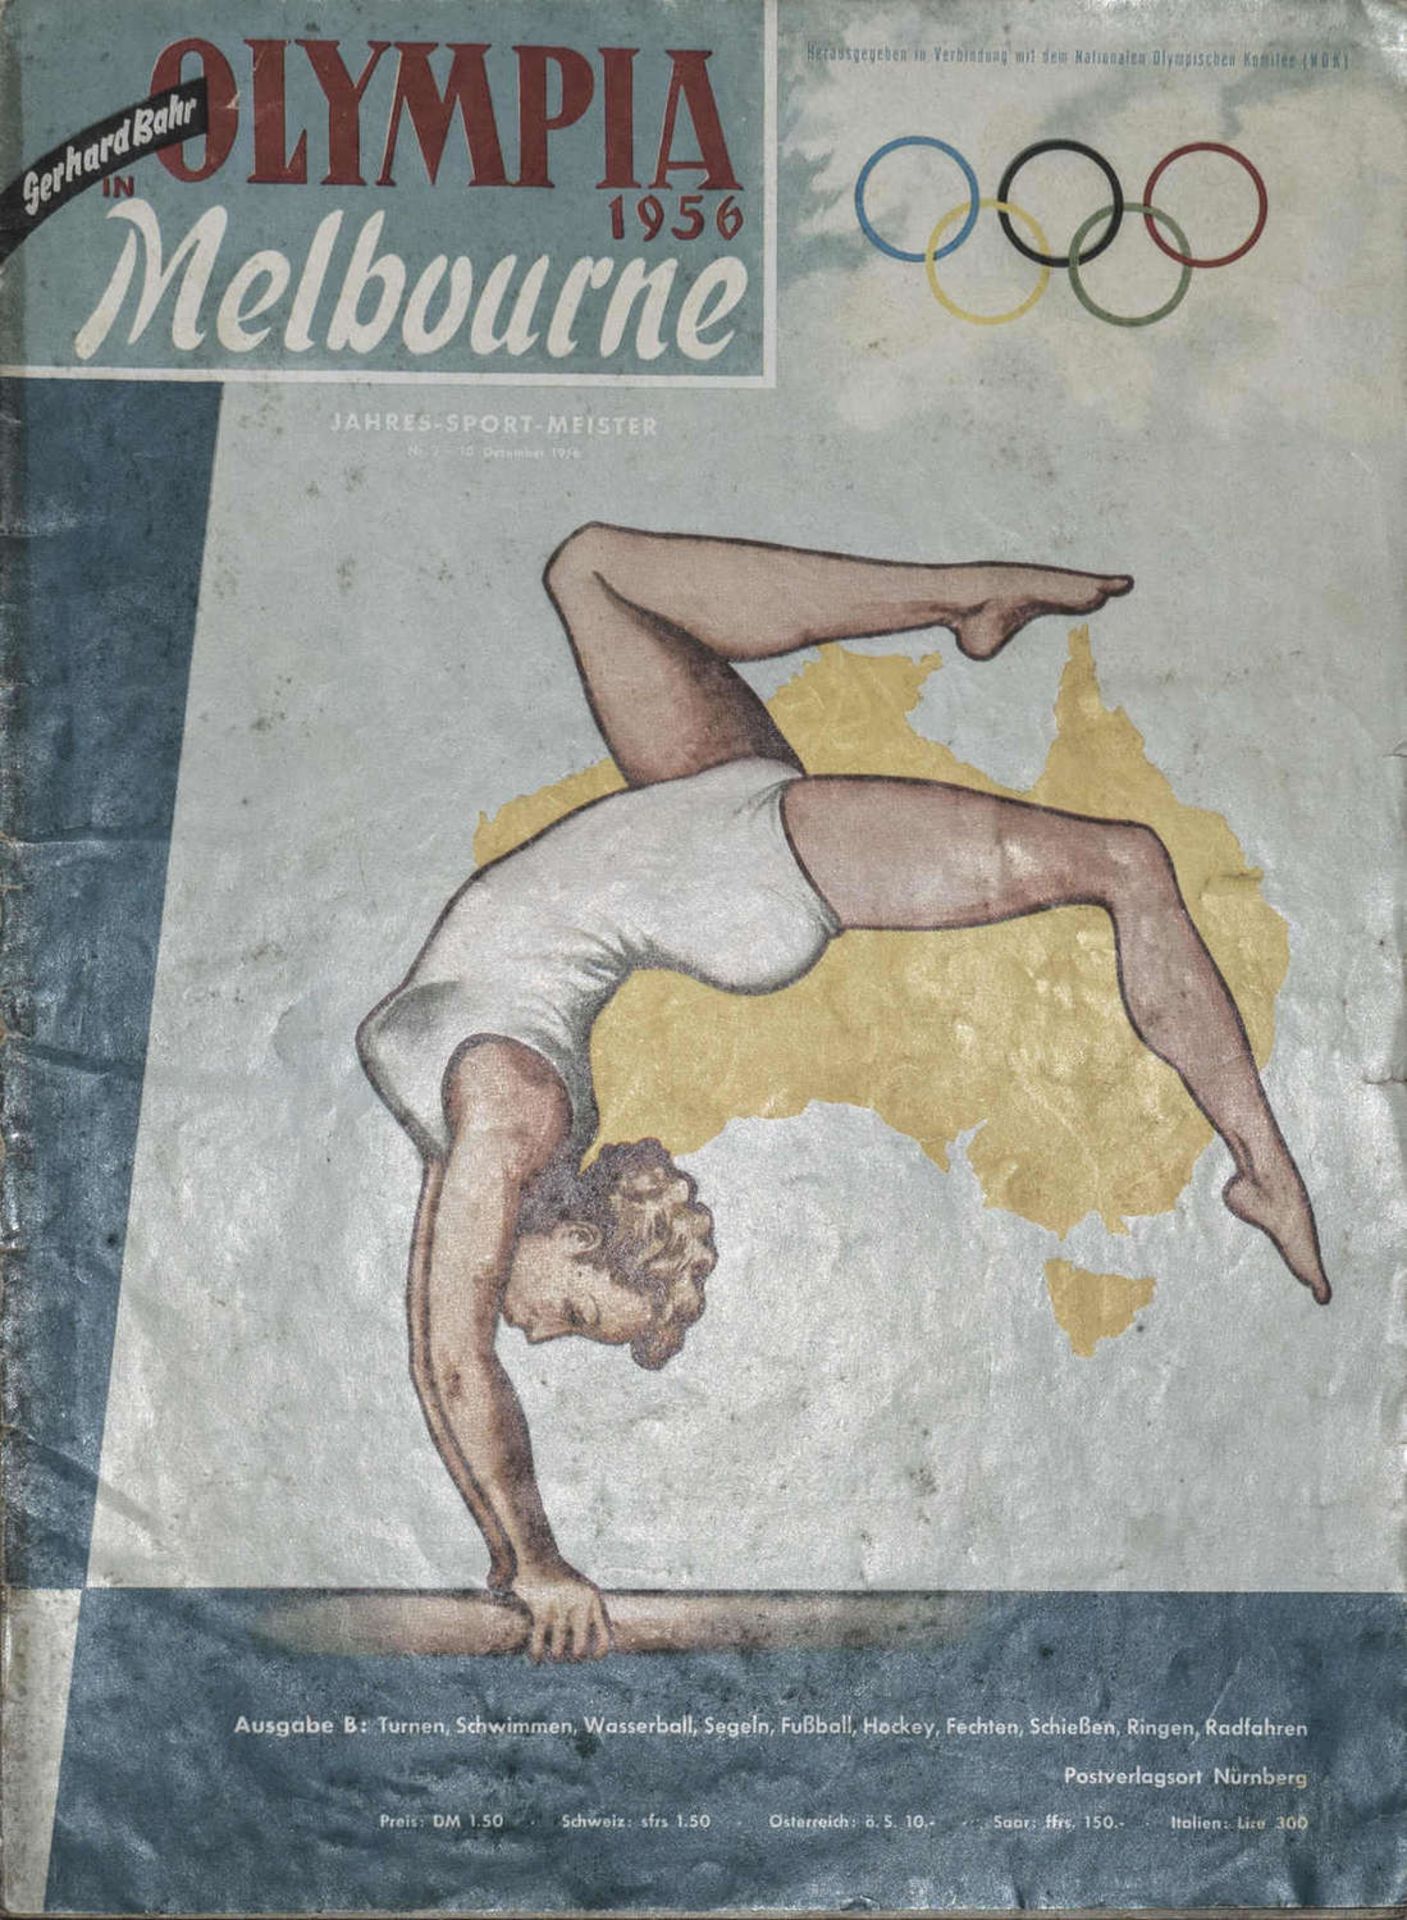 Heft von Gerhard Bahr, "Olympia 1956 Melbourne, Ausgabe B. Mit Ehrentafel der Sommerspiele 1956.